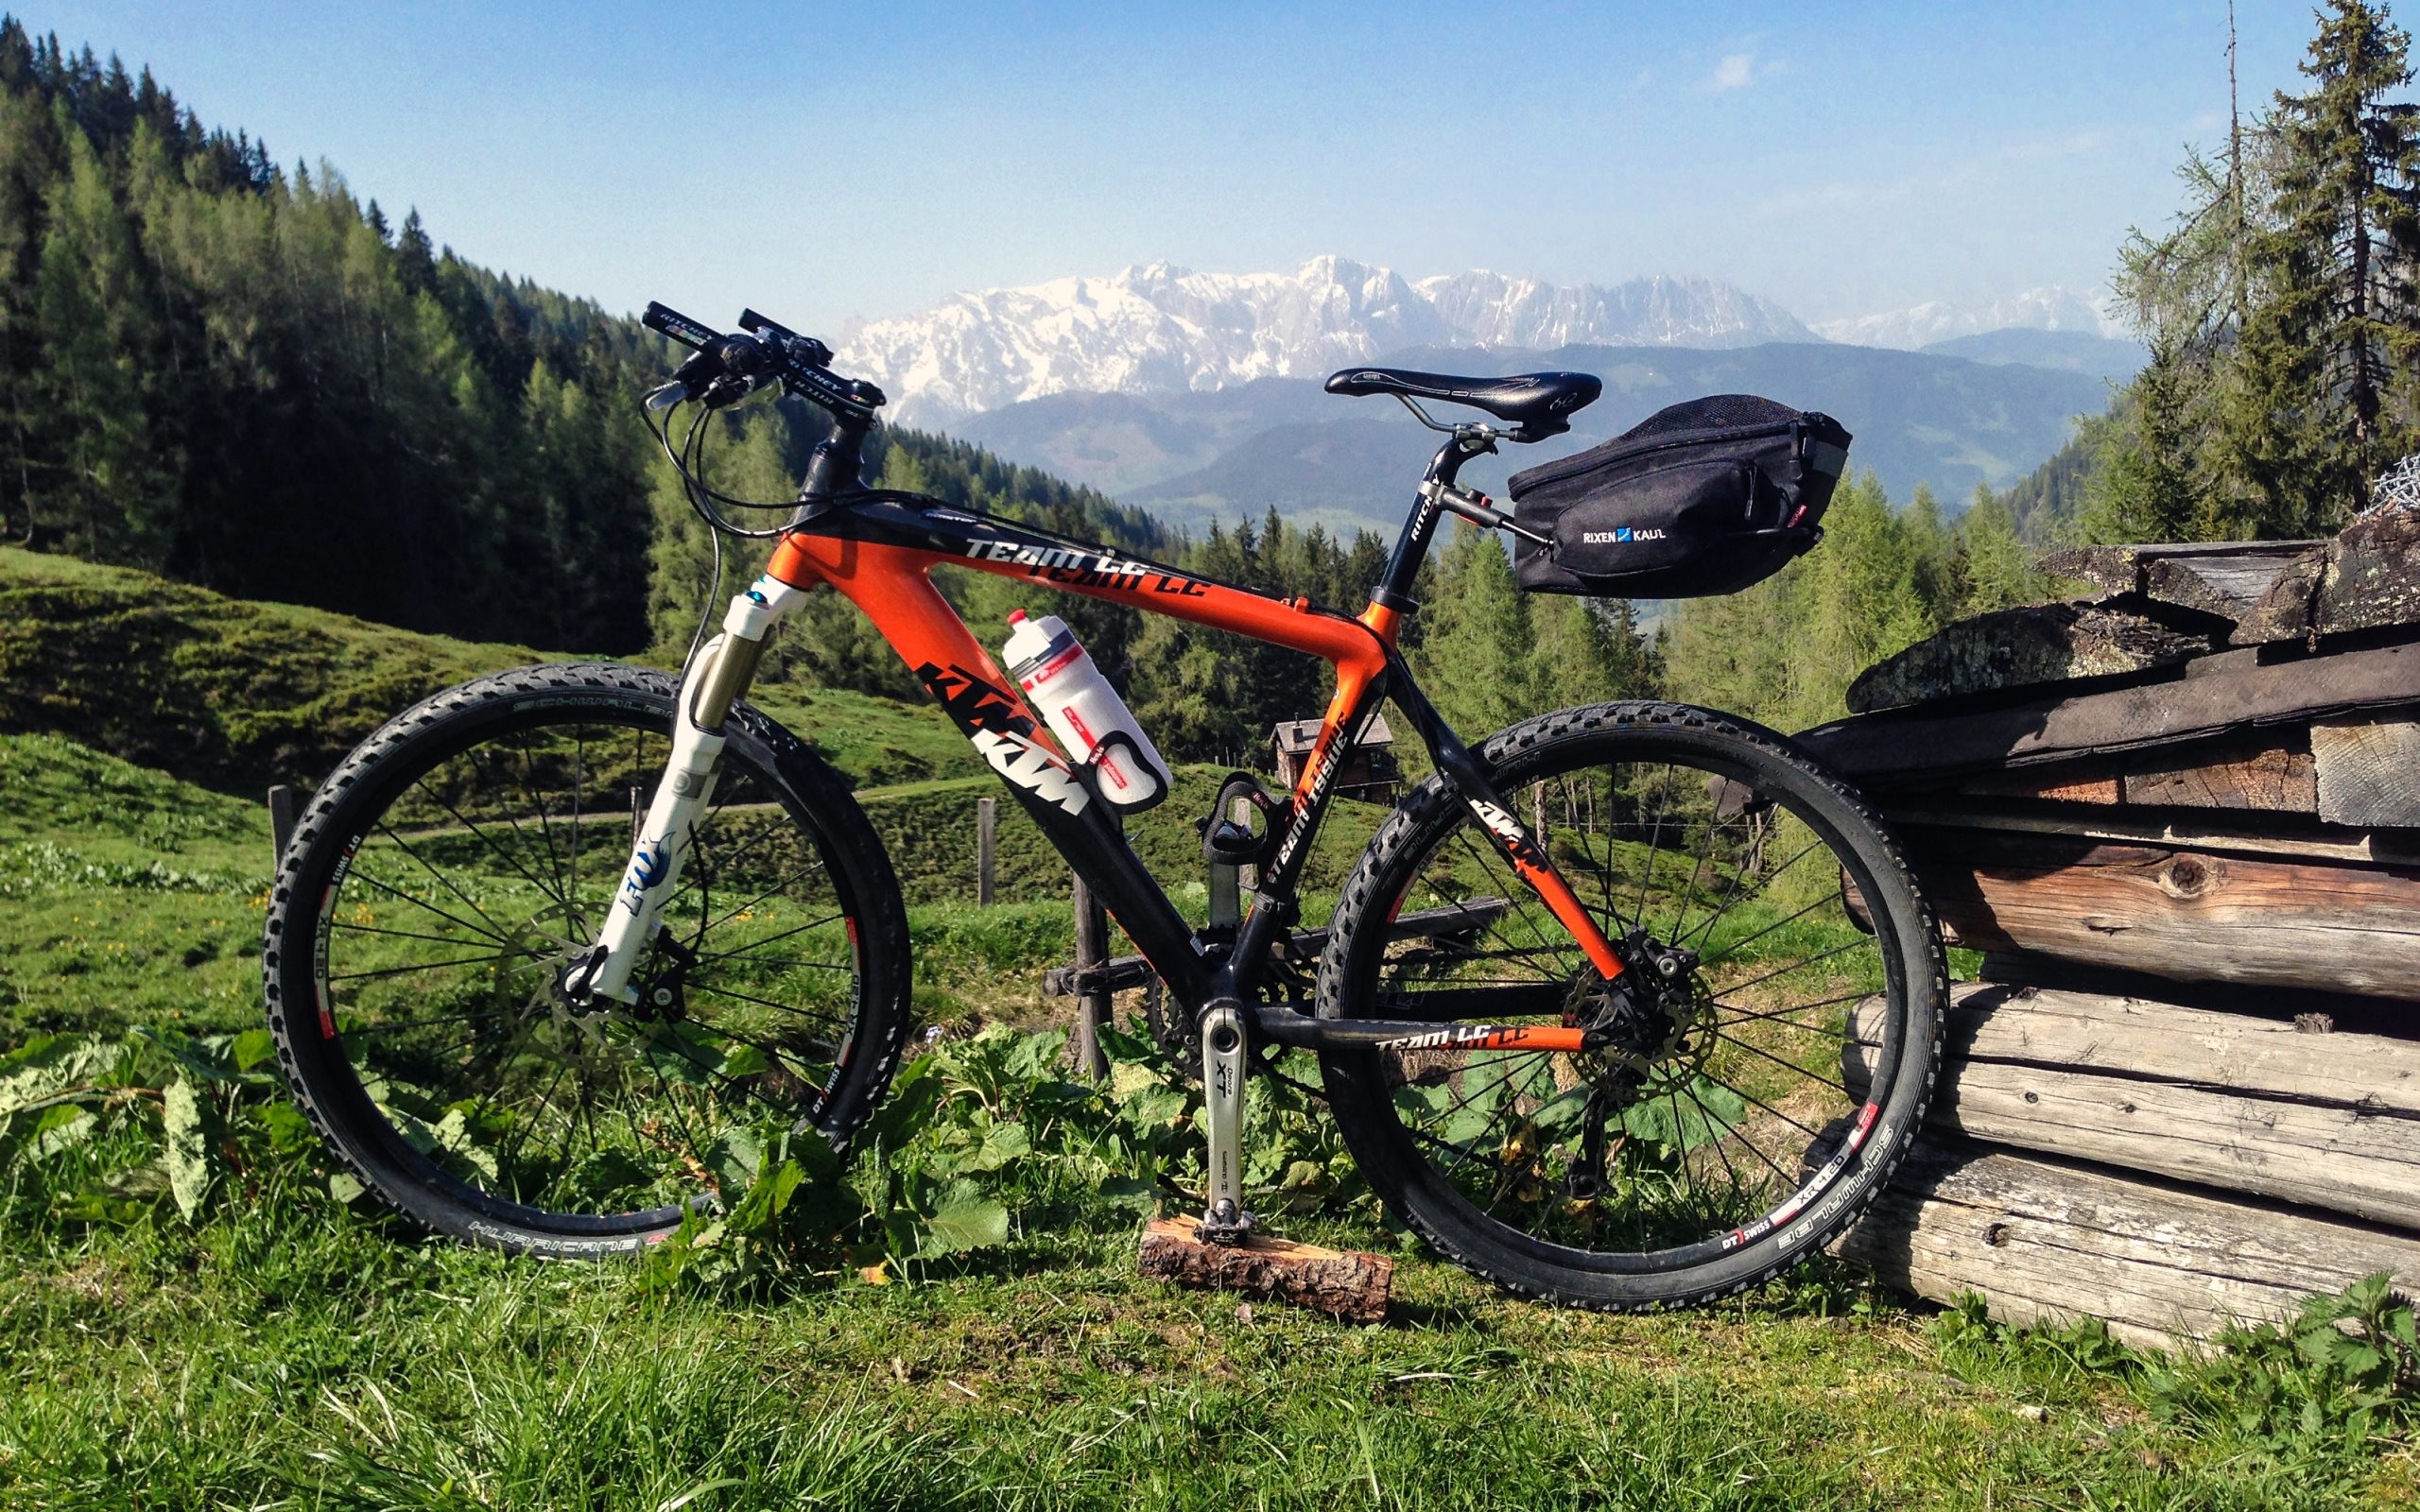 2560x1600 4K HD Wallpaper 2: KTM Professional Mountain Bike